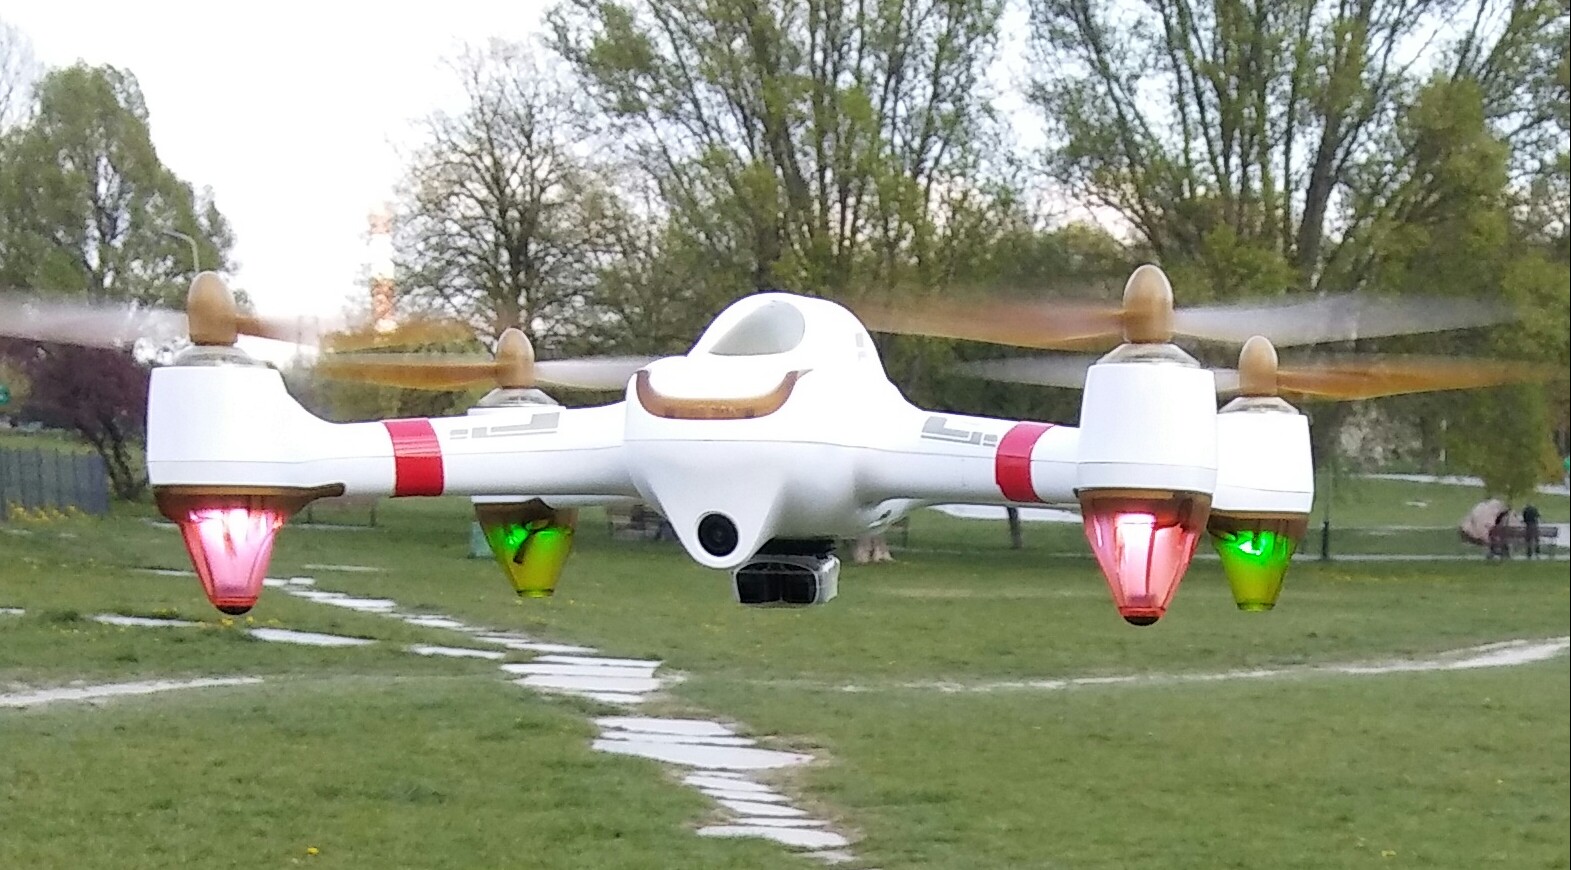 Pod drona Buzzer jest ustawiony na 3.50 na cele